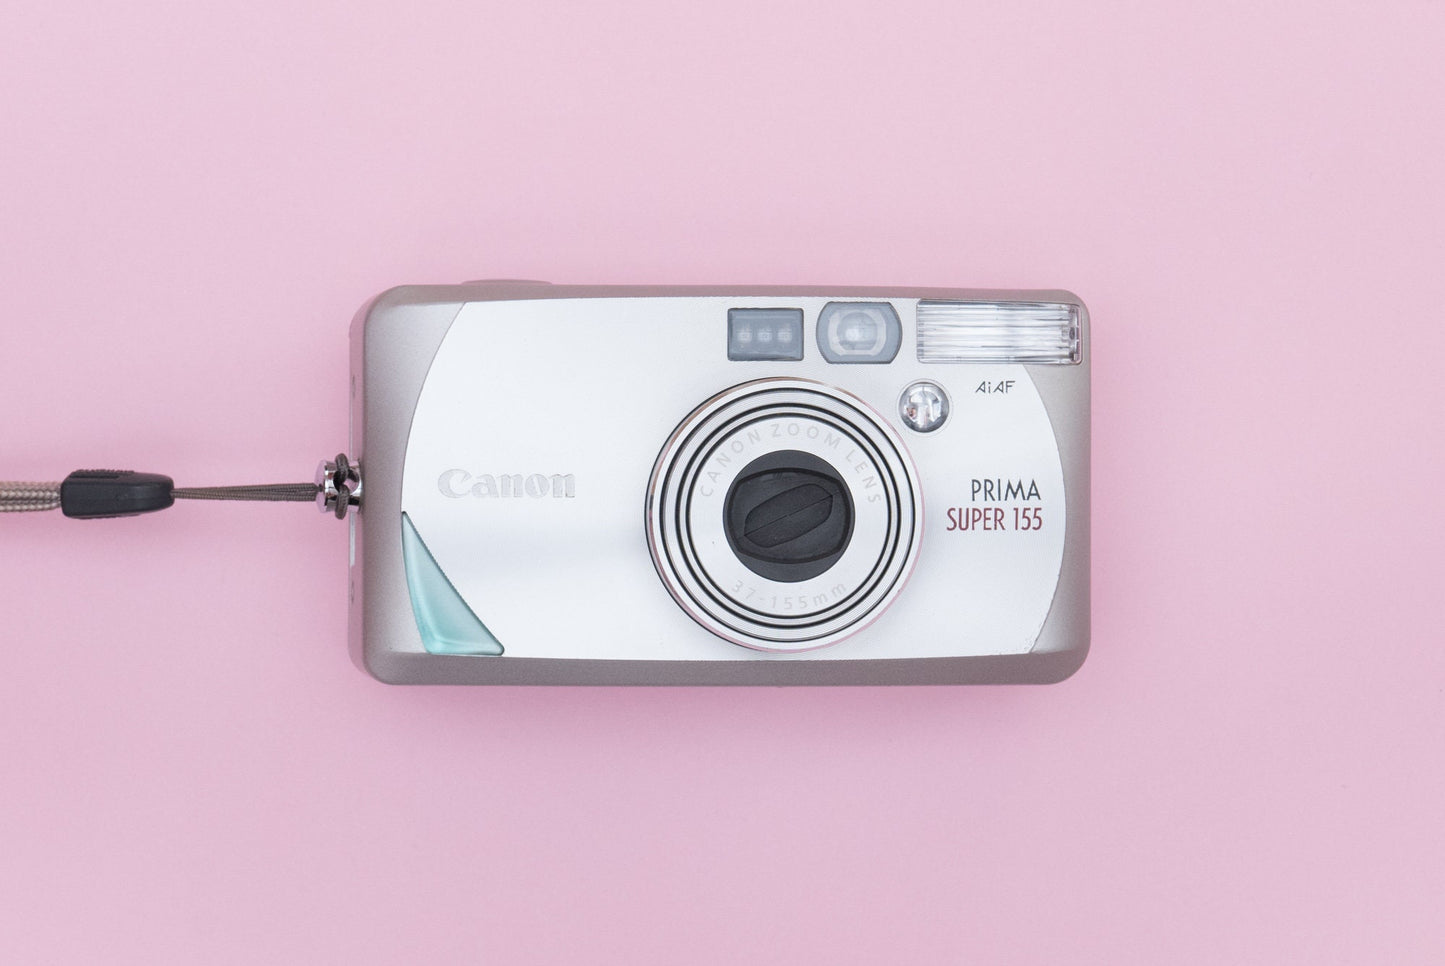 Canon Prima Super 155 Compact 35mm Film Camera